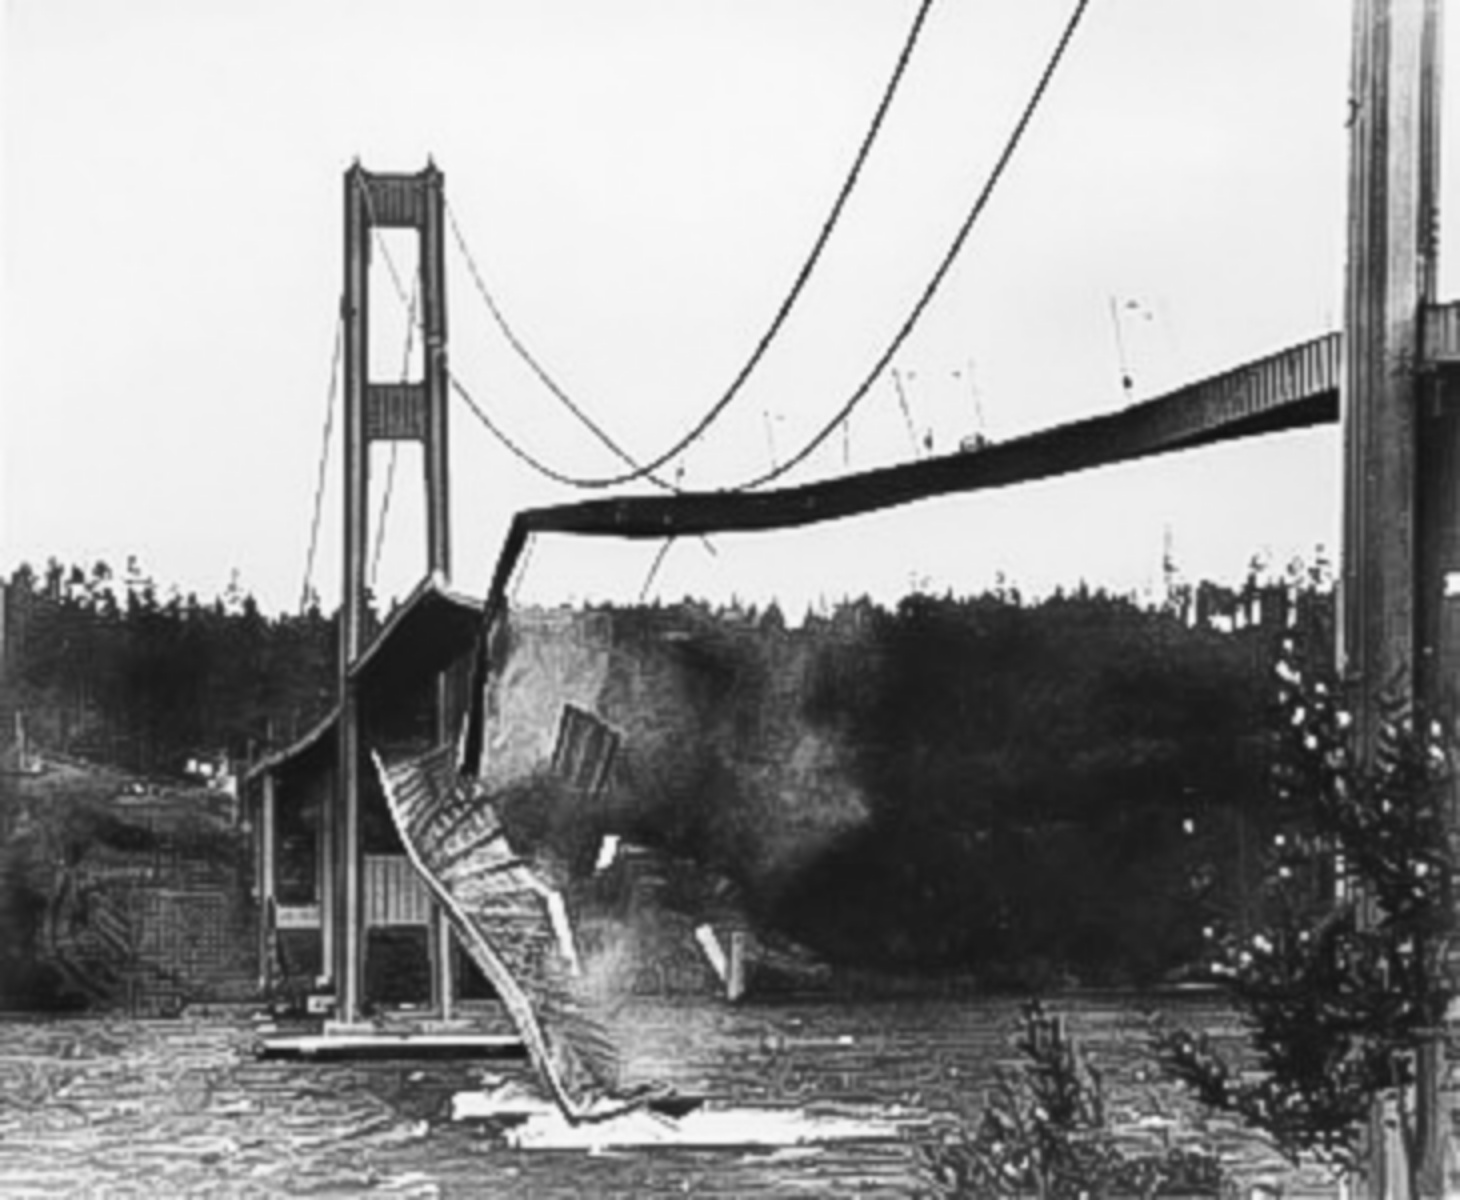 Zřícení mostu Tacoma Narrows Bridge 7. listopadu 1940.